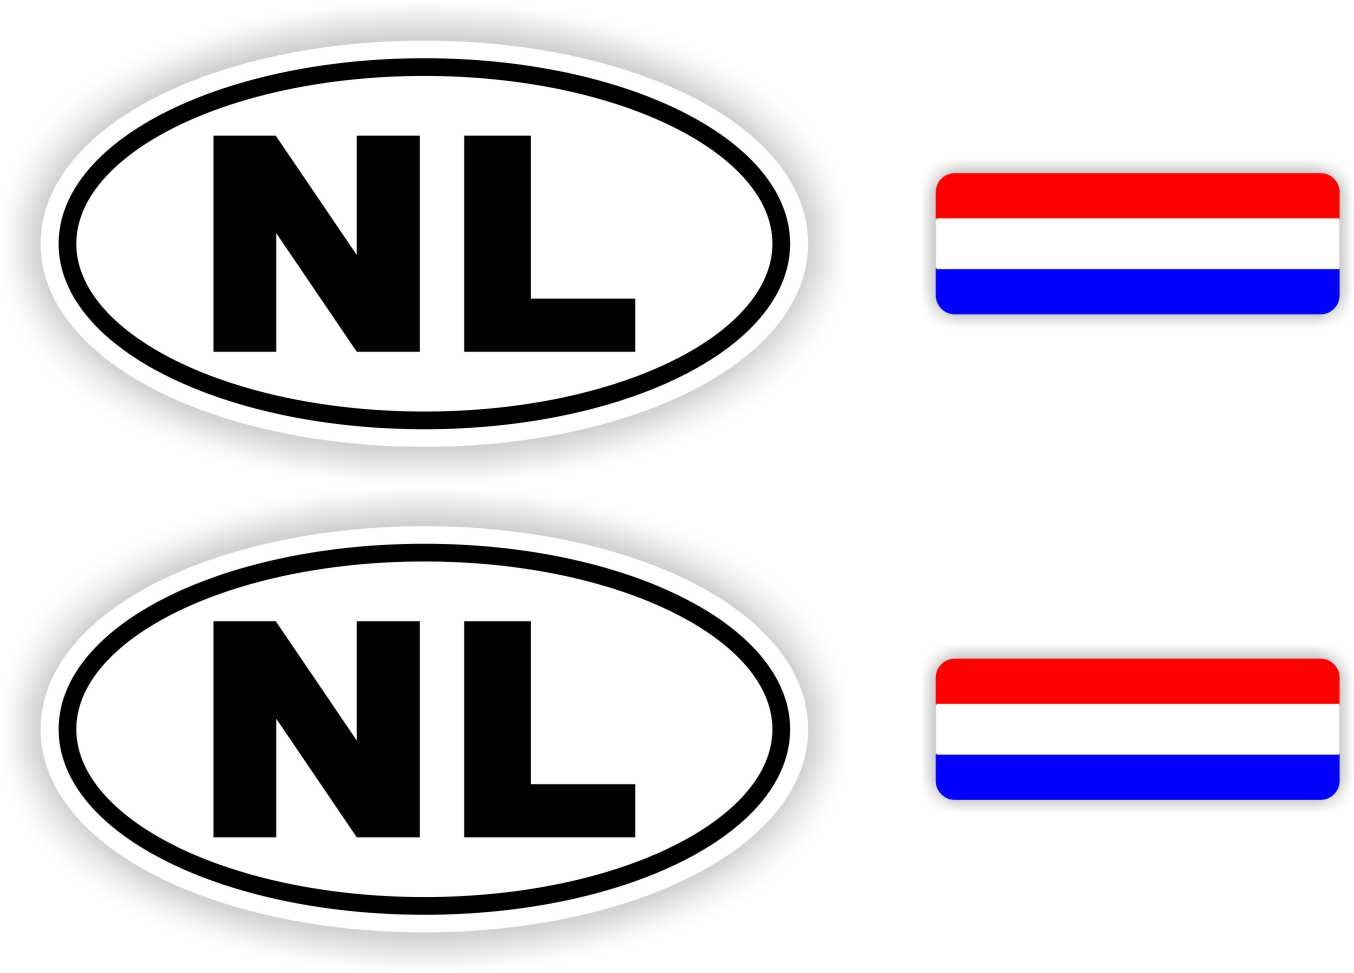 Dreigend Supermarkt bungeejumpen NL, Nederland auto sticker set. - JERMA AllerhandeStickers